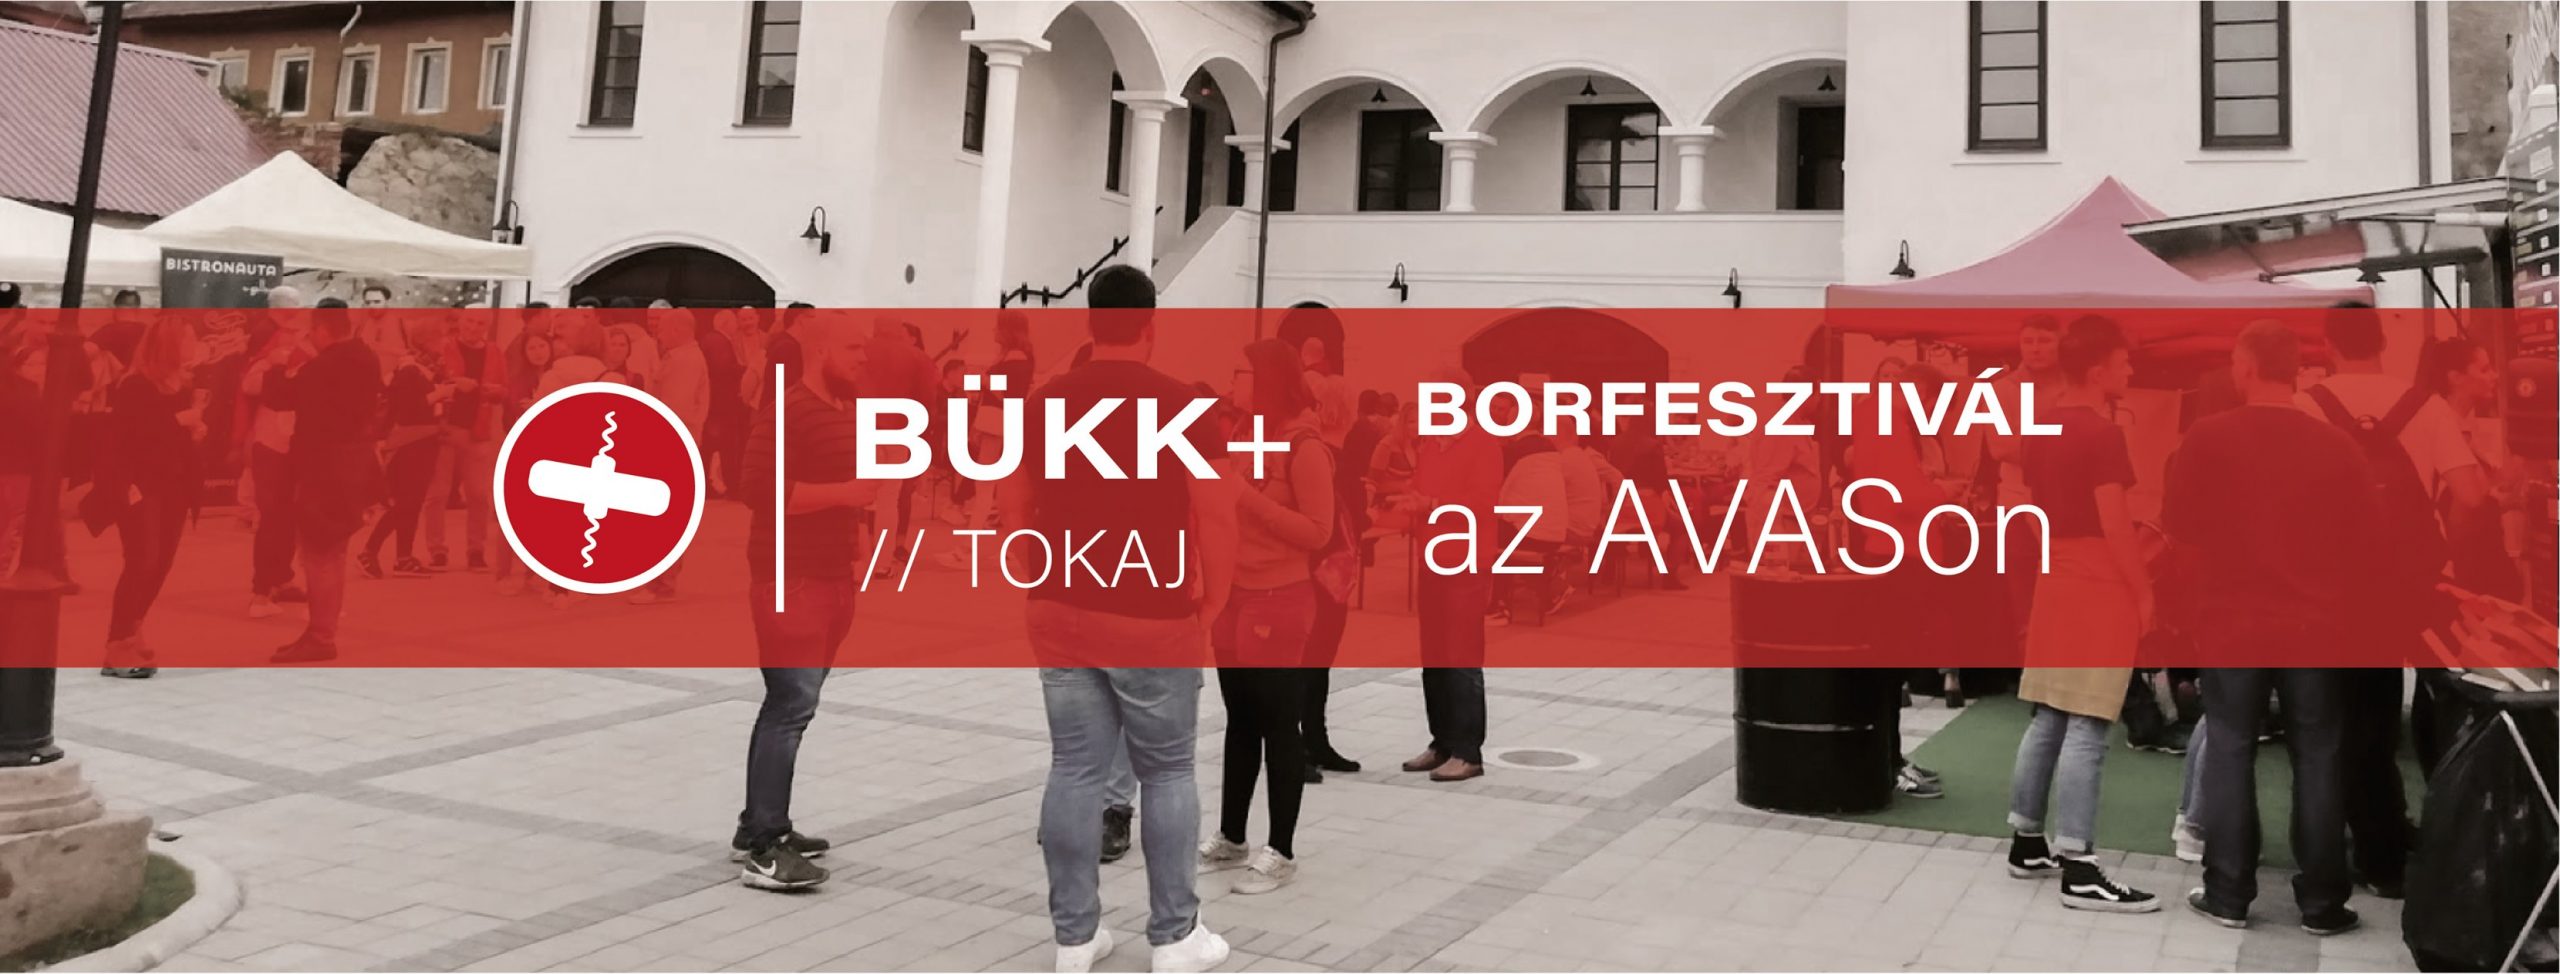 Bükk + Tokaj - Borfesztivál az AVASon